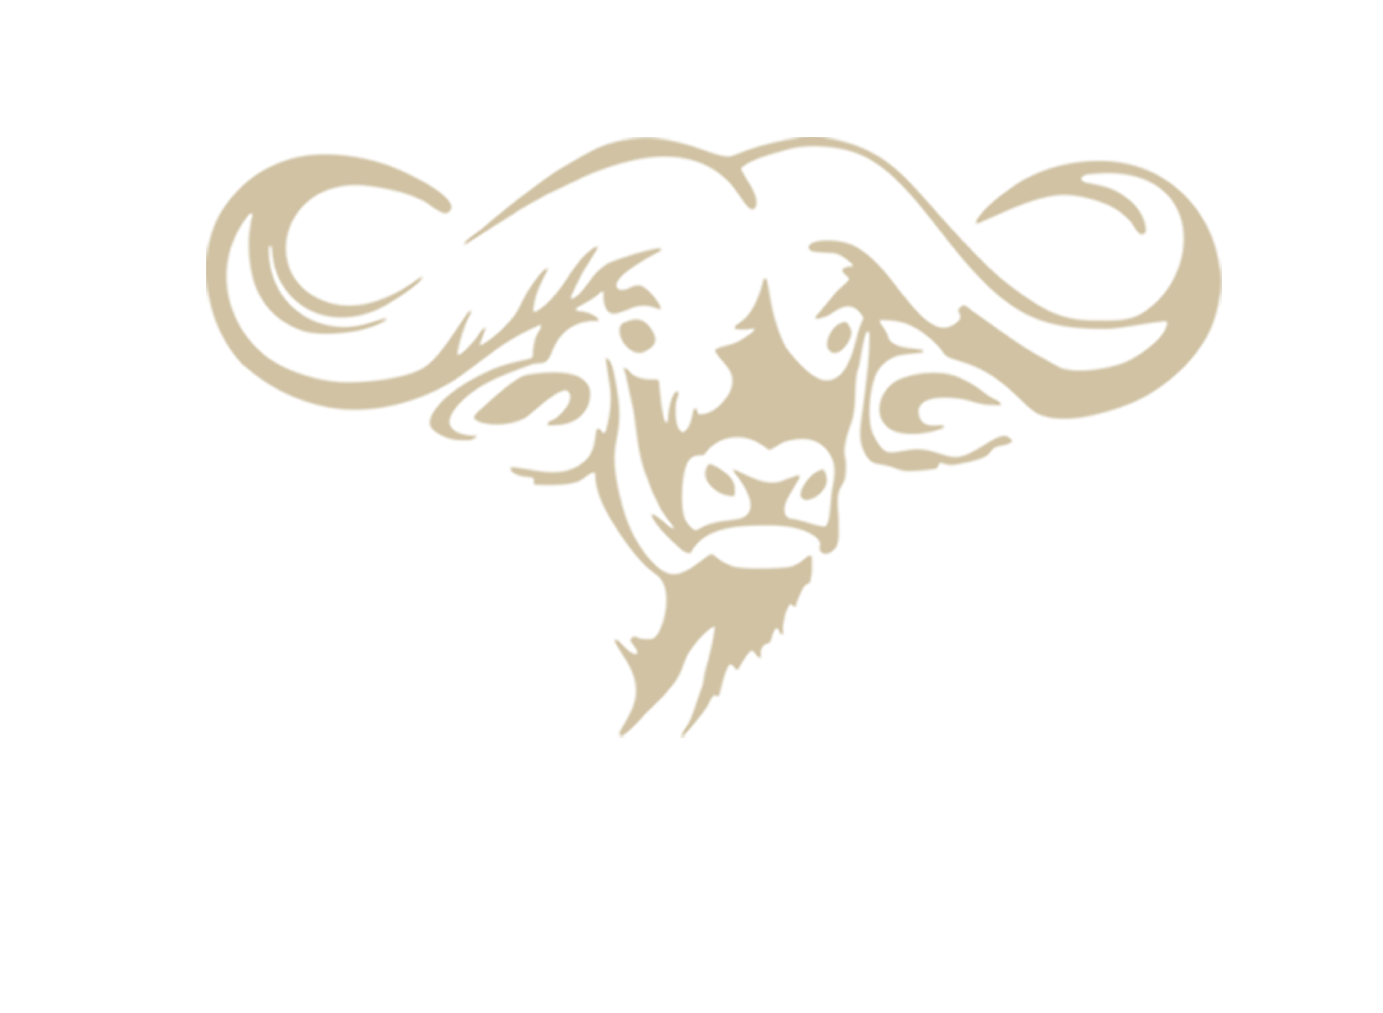 UBATHI GLOBAL SAFARIS